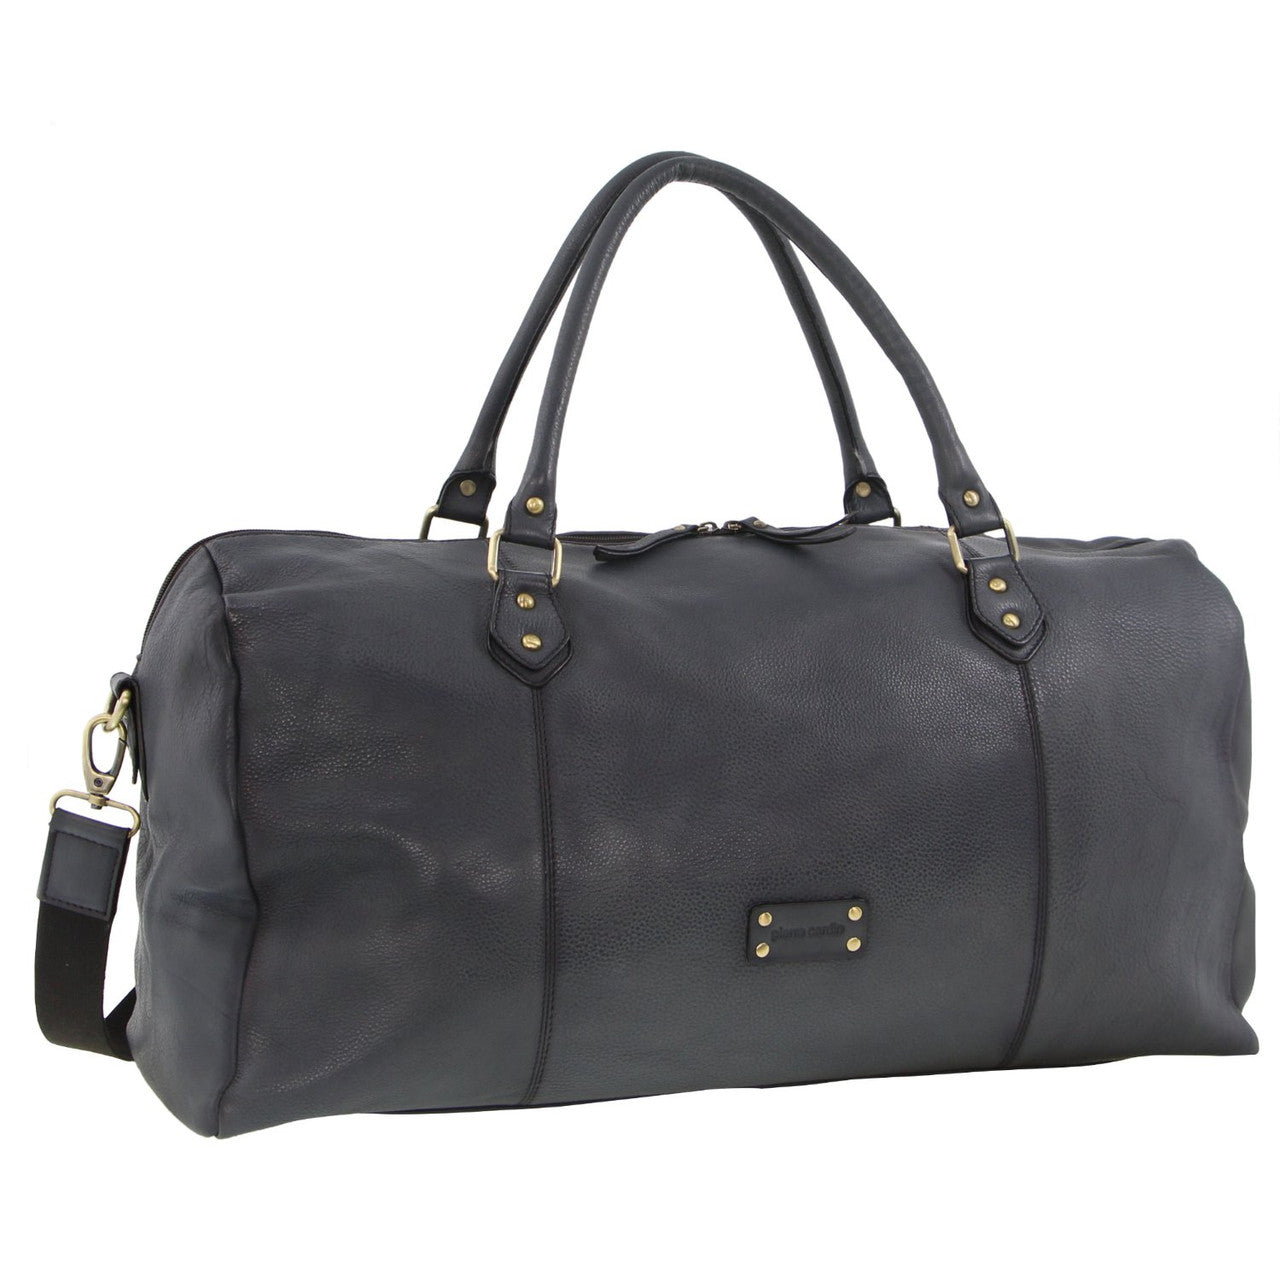 Pierre Cardin - 56cm Leather overnight bag PC3335 - Black